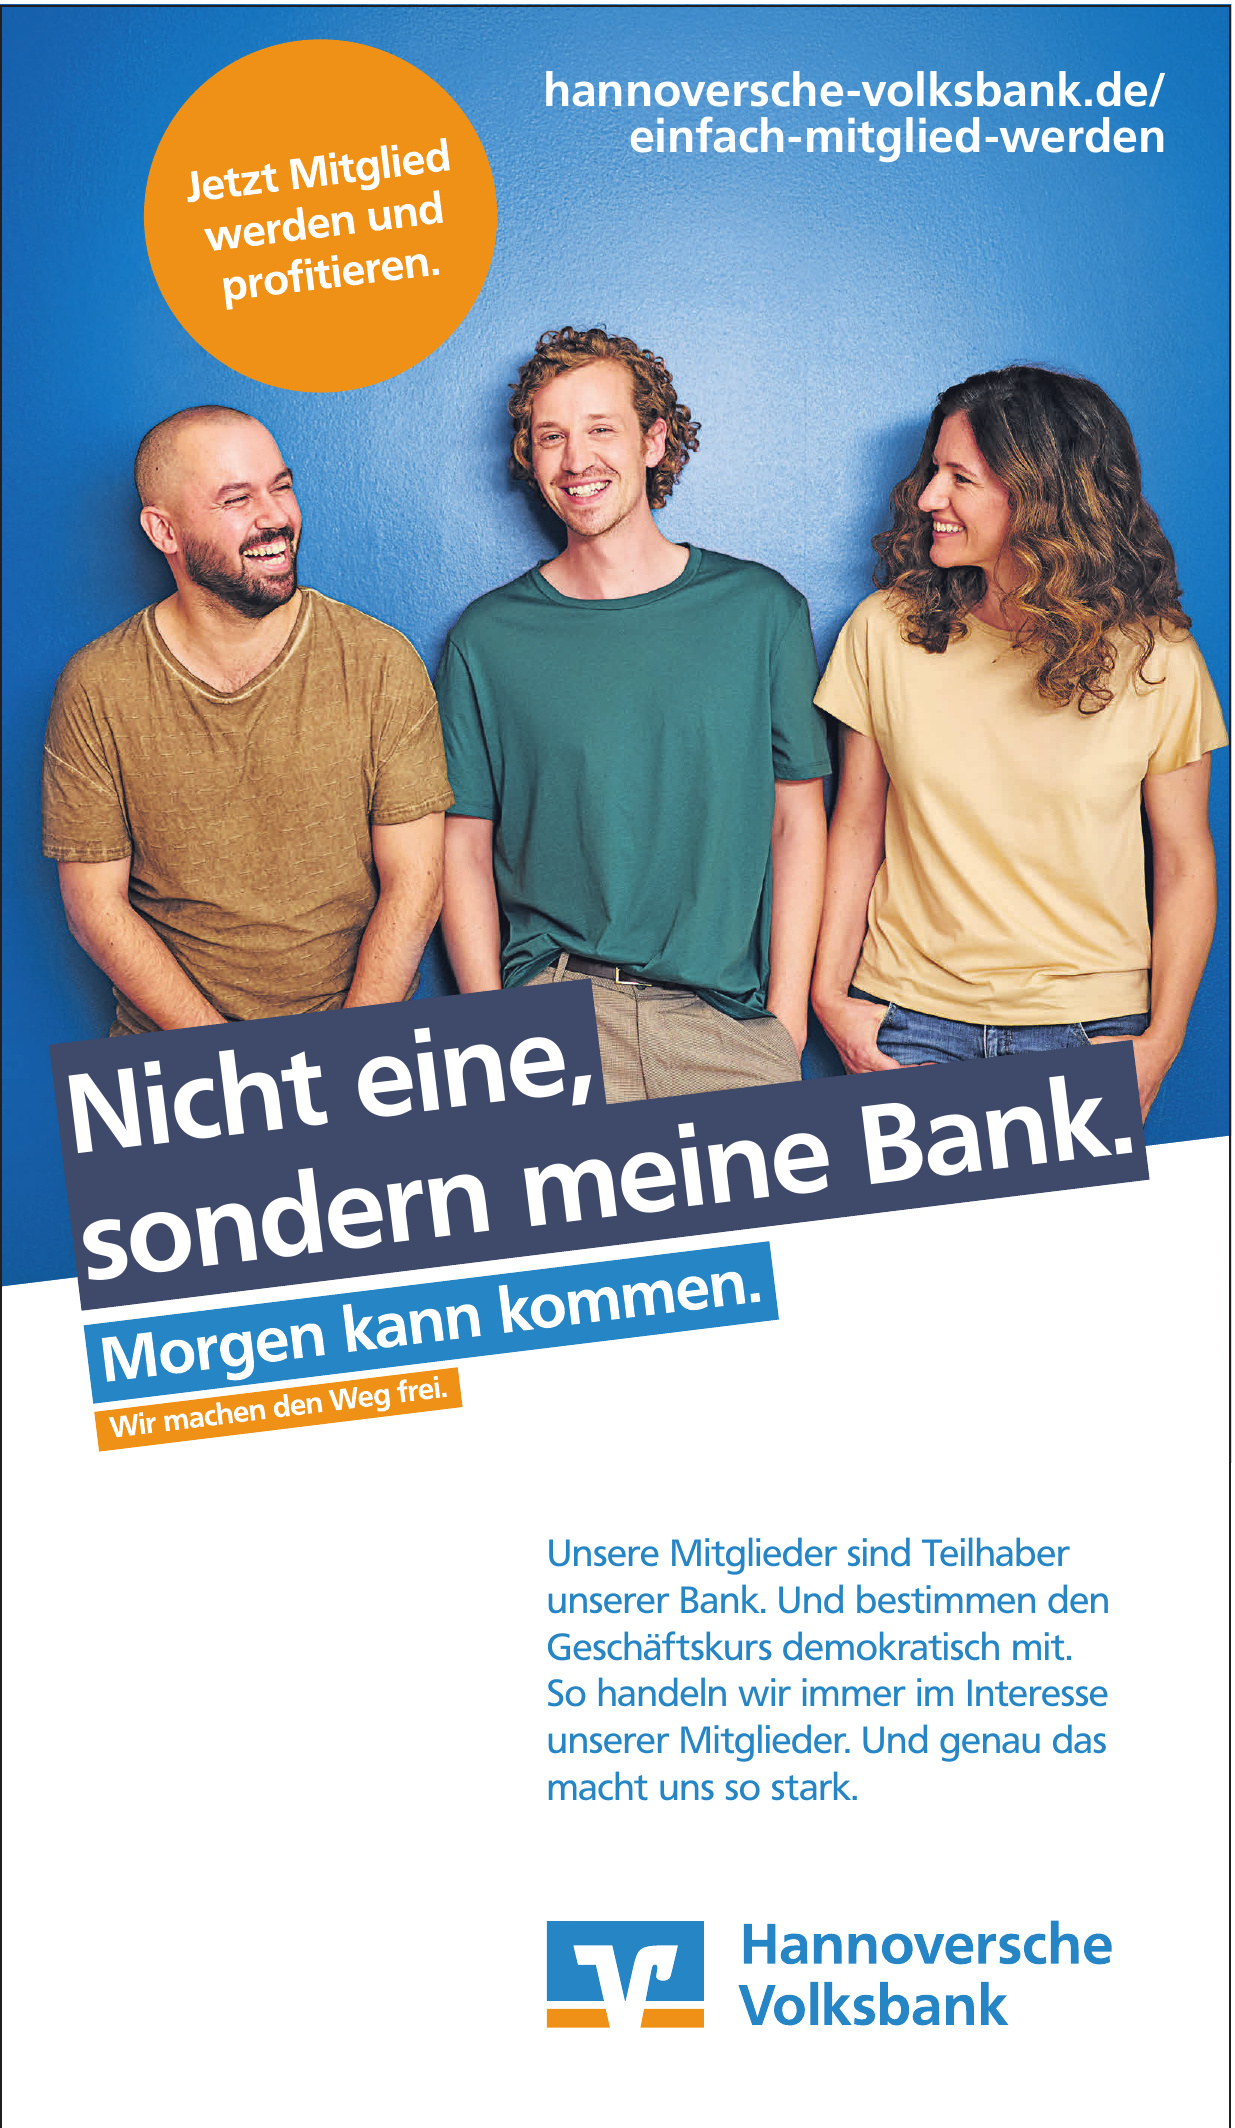 Hannoversche Volksbank